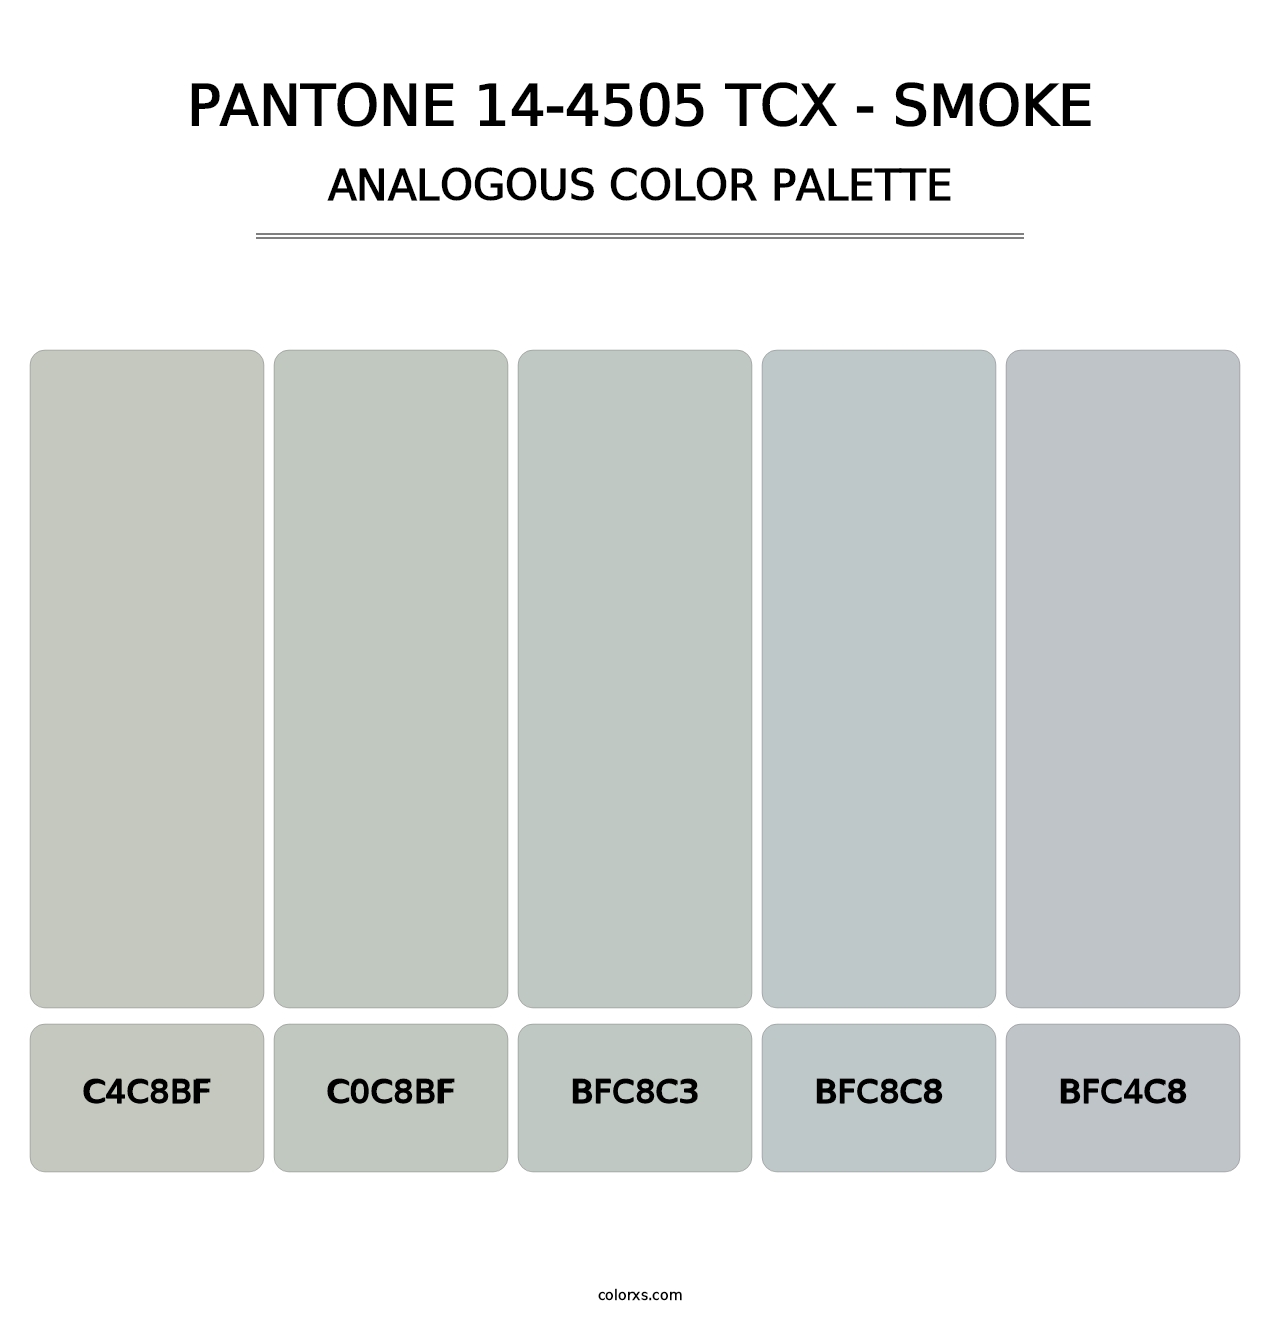 PANTONE 14-4505 TCX - Smoke - Analogous Color Palette